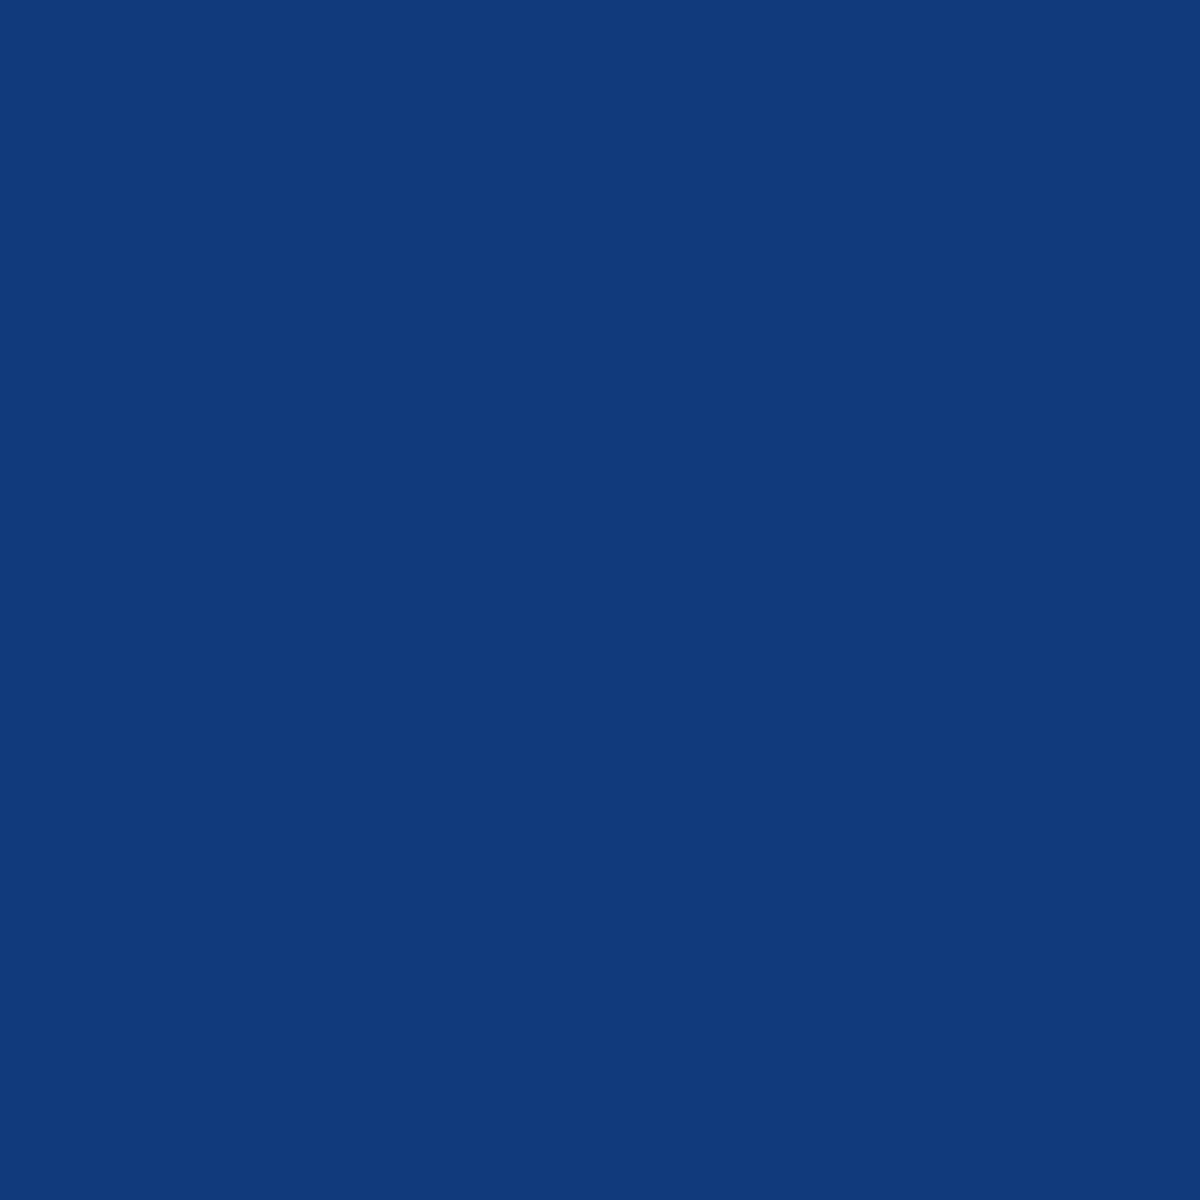 3M Scotchcal Doorschijnende Kleurenfolie 3630-157 Sultan blauw 1,22m x 45,7m